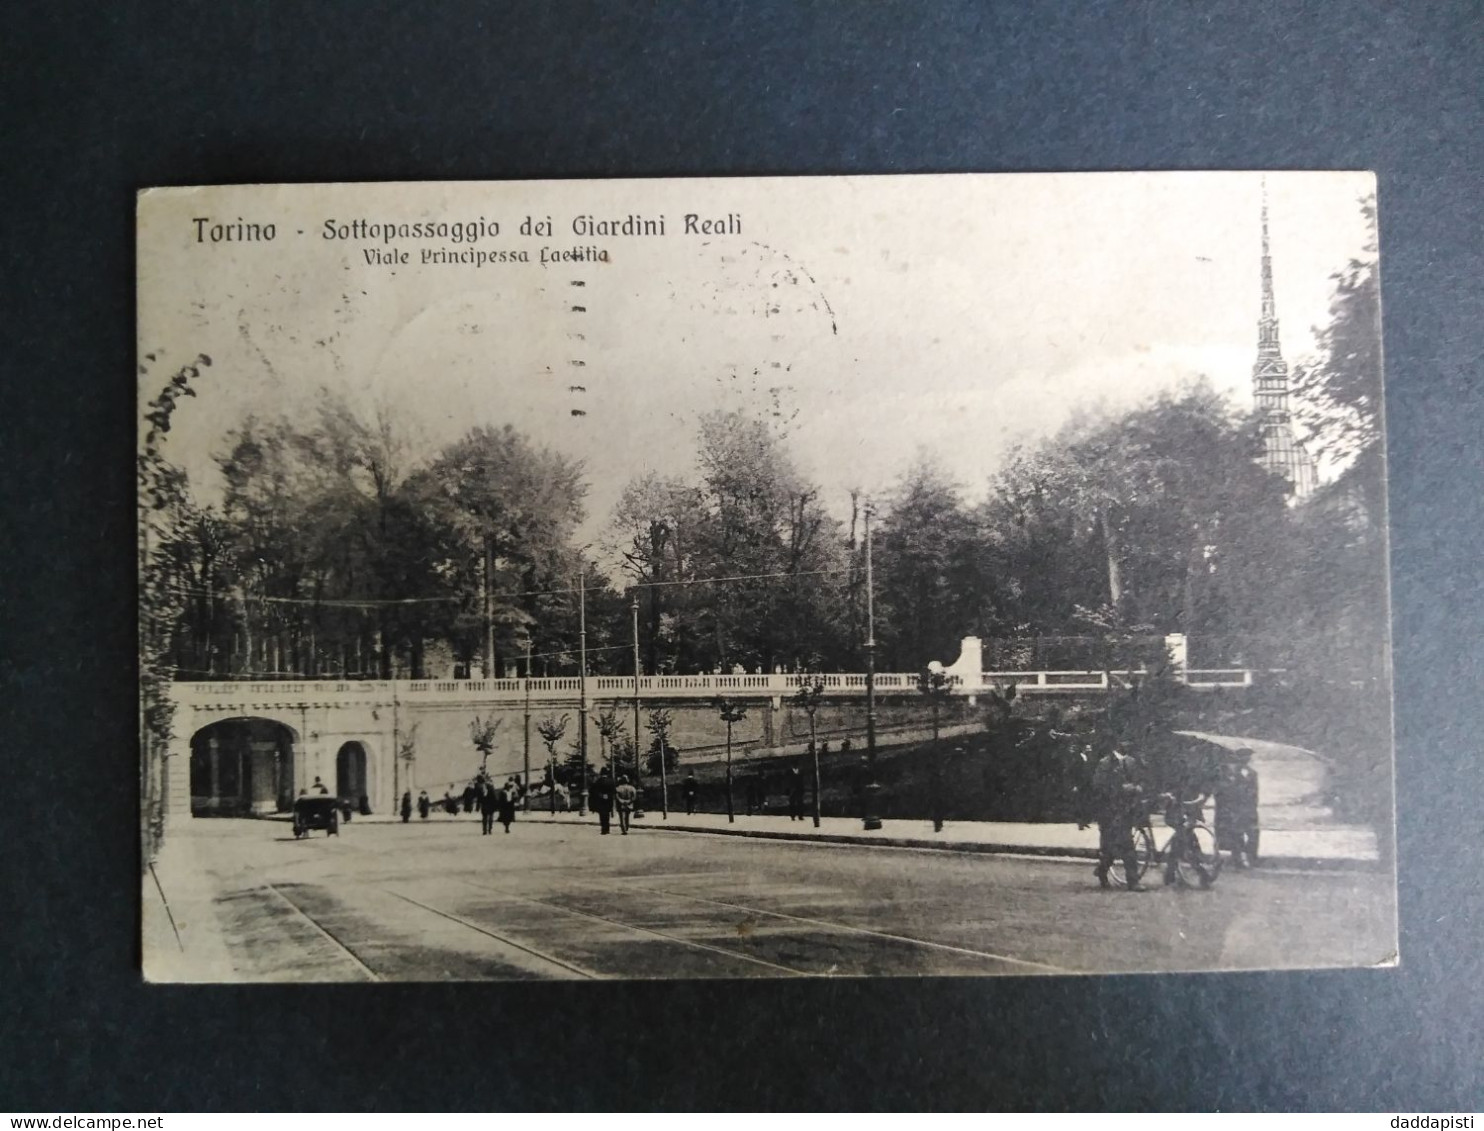 [S1] Torino - Sottopassaggio Dei Giardini Reali Con Passanti E Calesse. Piccolo Formato,Viaggiata, 1925 - Parques & Jardines